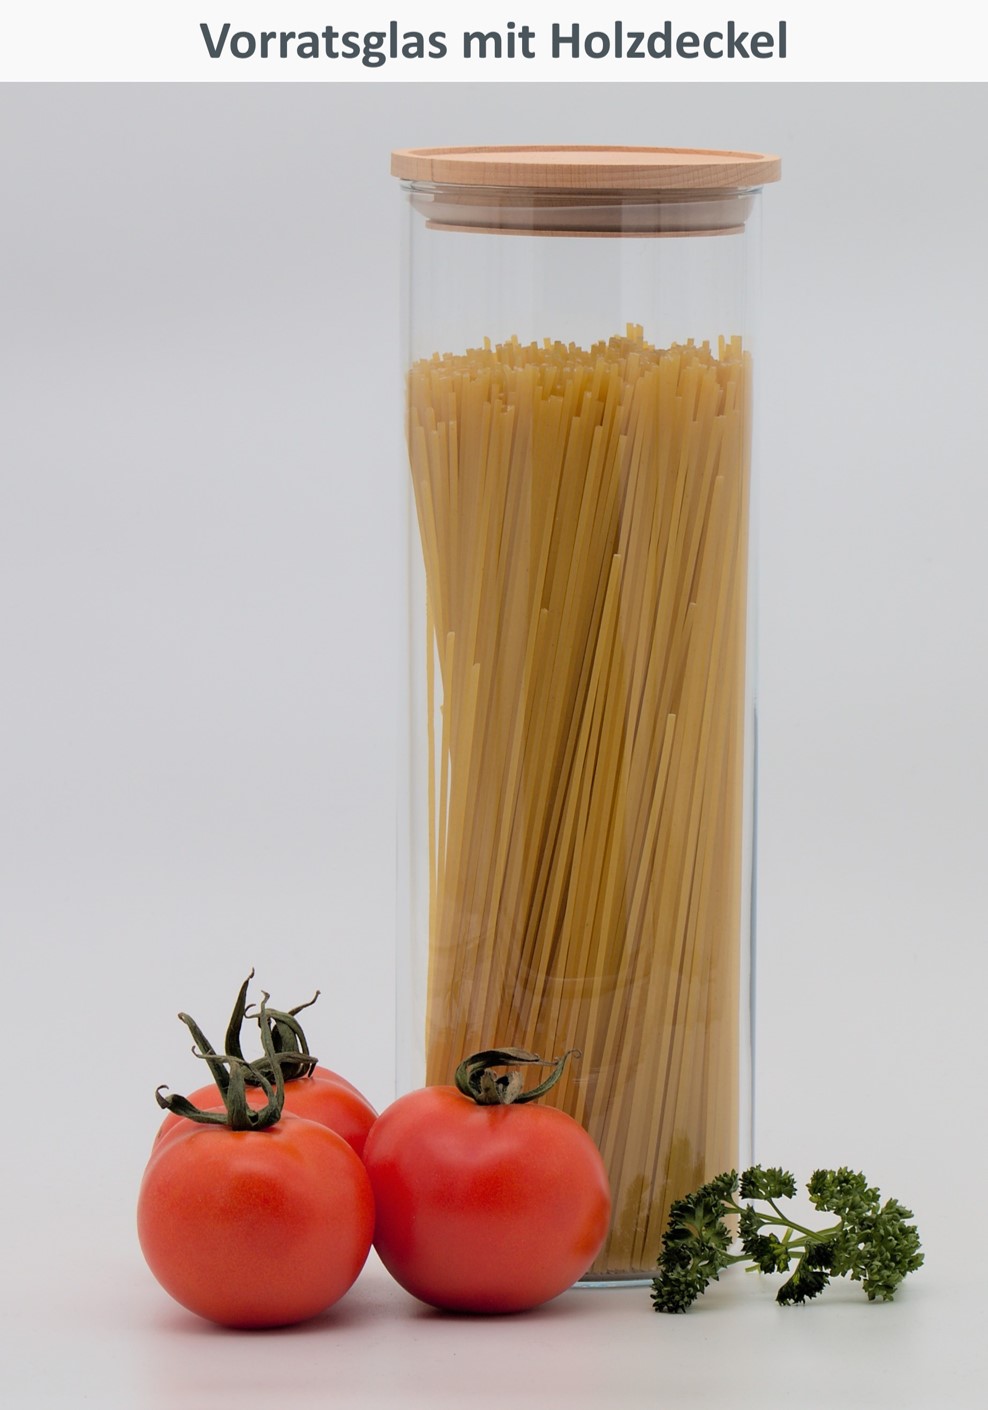 Spaghetti in grossem Vorratsglas mit Tomaten und Petersilie im Vordergrund